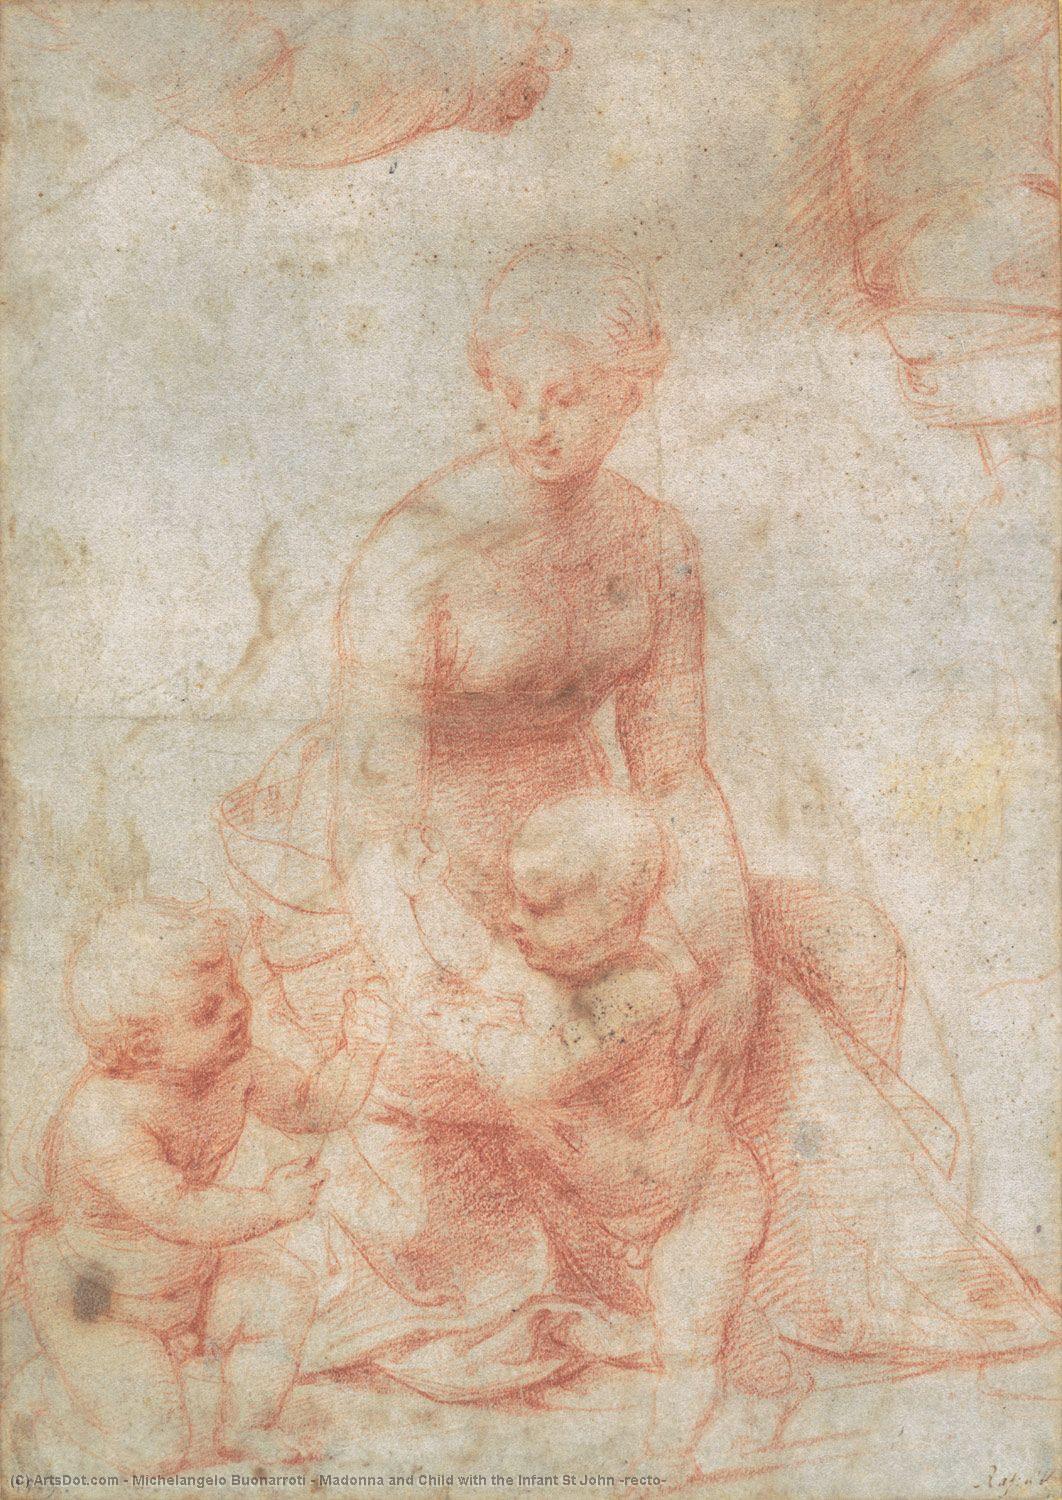 WikiOO.org - Enciklopedija likovnih umjetnosti - Slikarstvo, umjetnička djela Michelangelo Buonarroti - Madonna and Child with the Infant St John (recto)